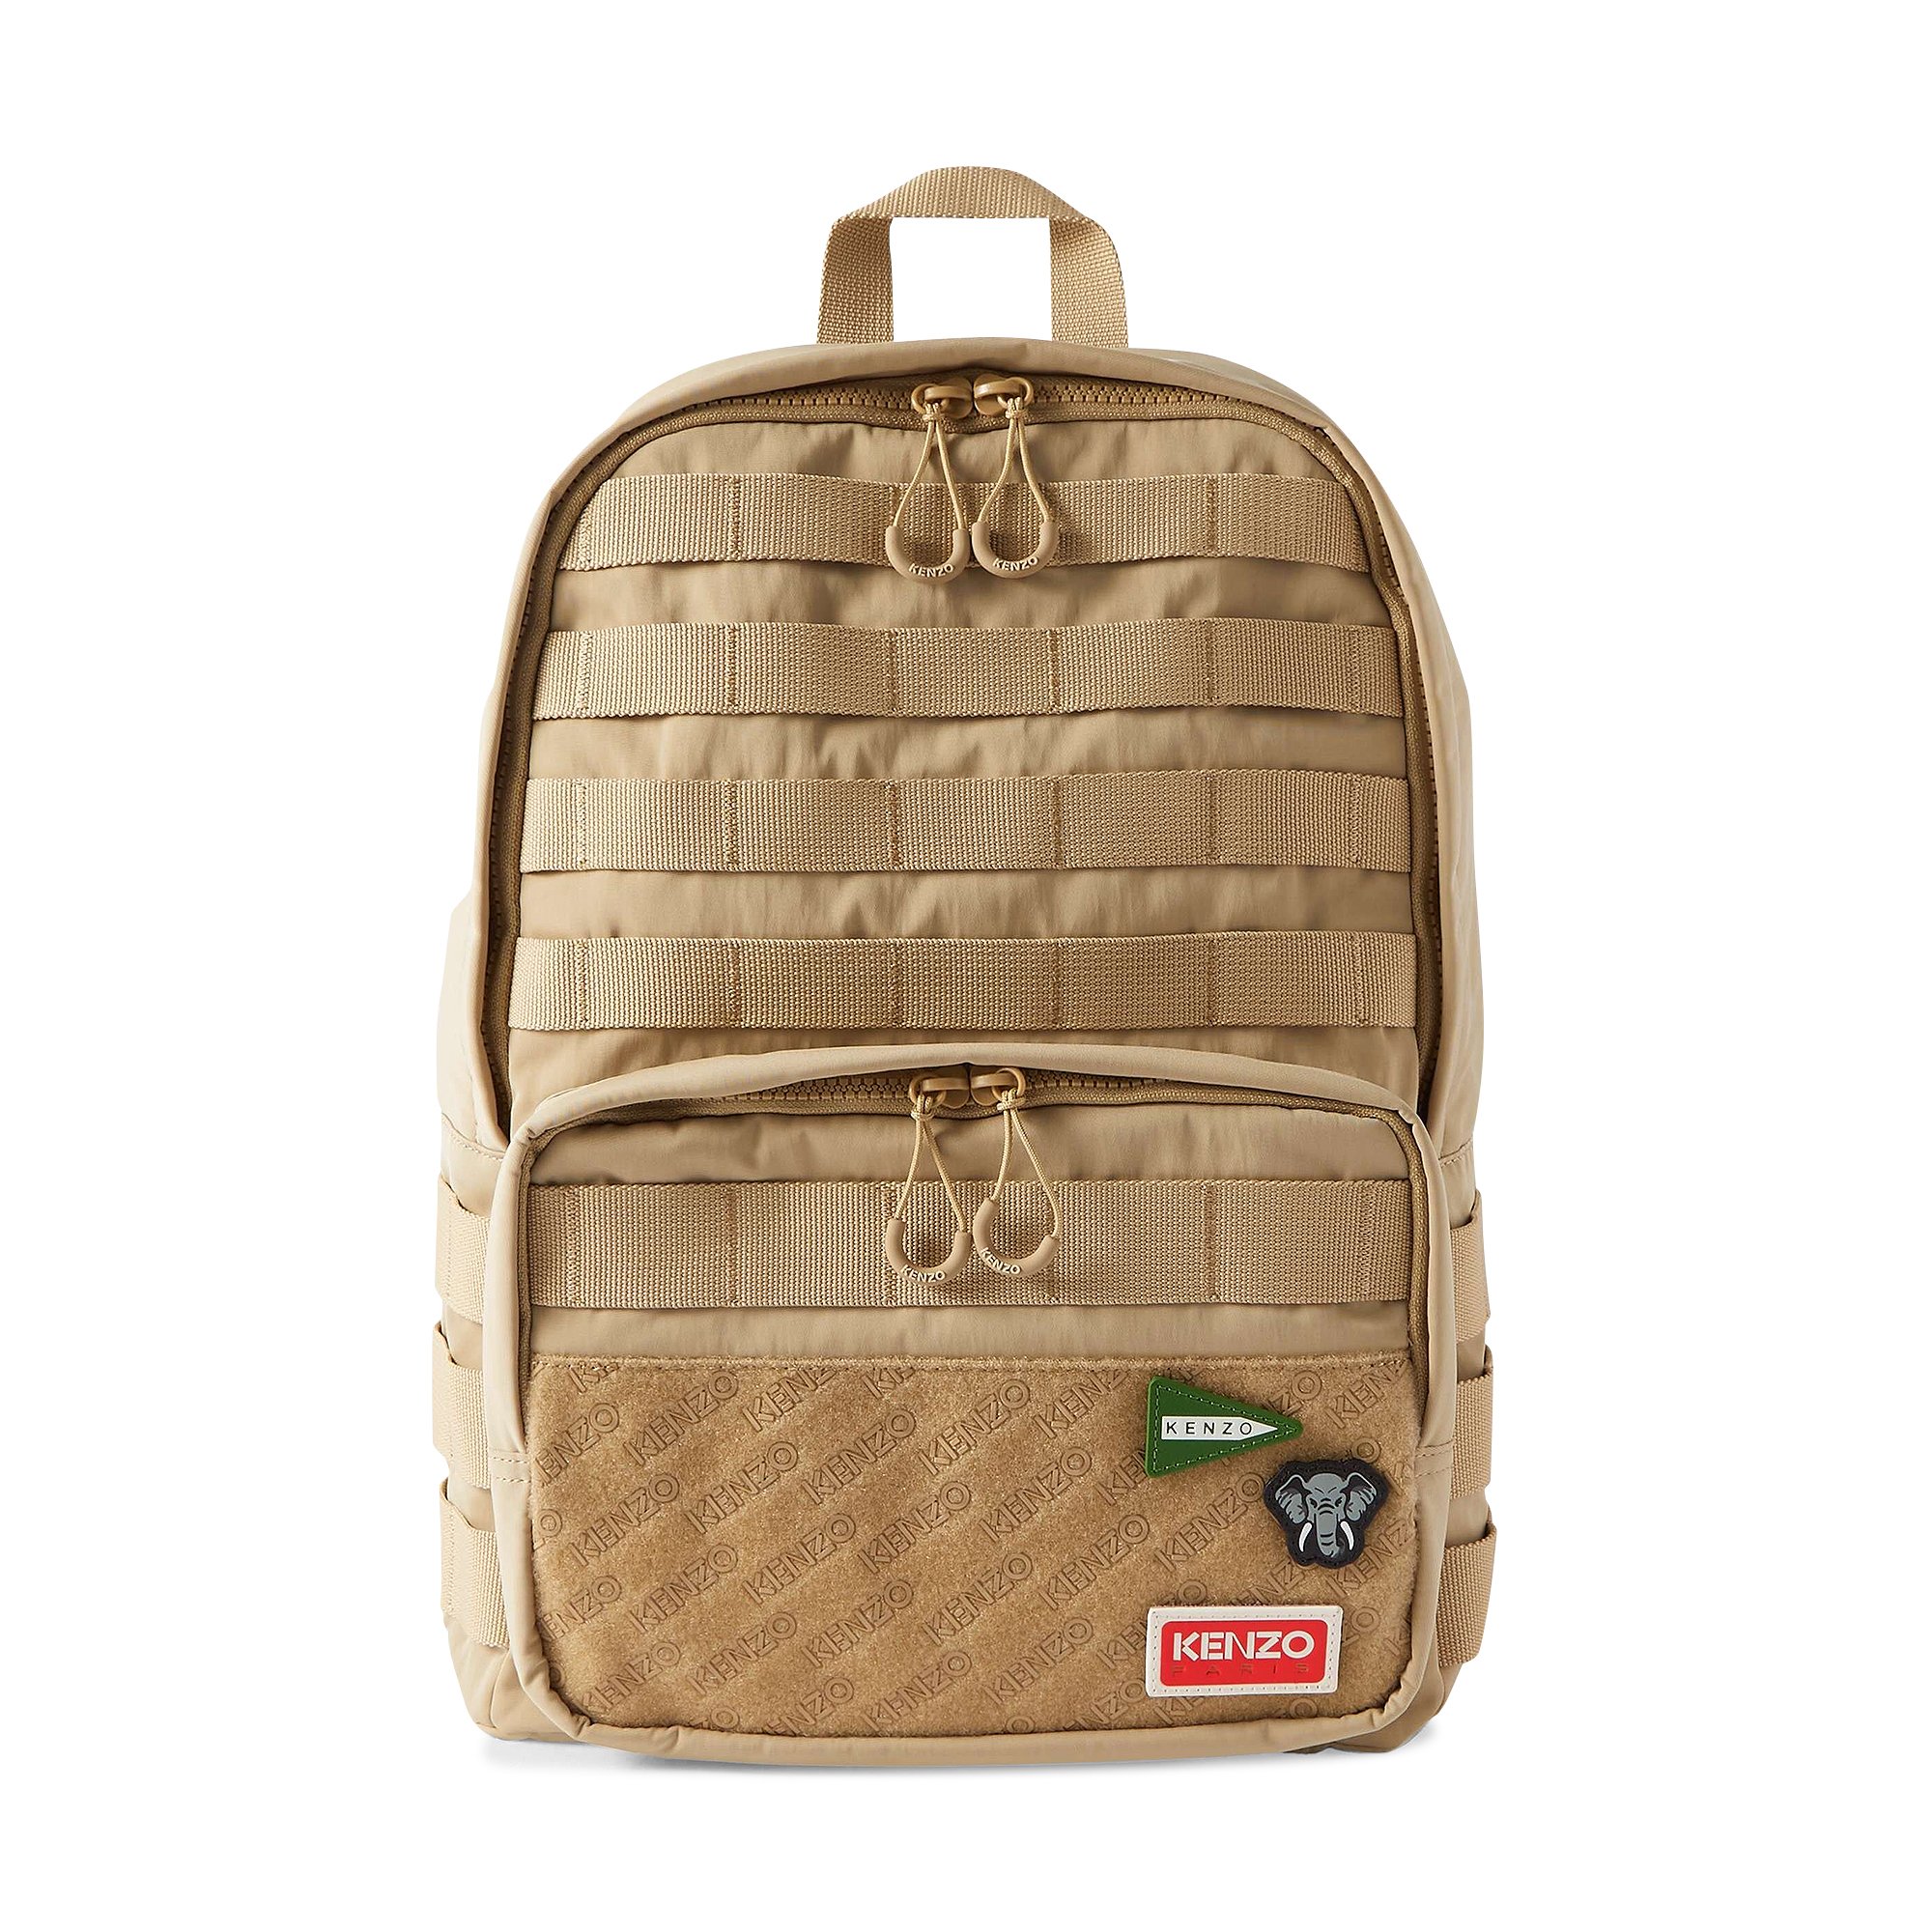 Buy Kenzo Jungle Backpack 'Beige' - FD55SA203F30 11 | GOAT